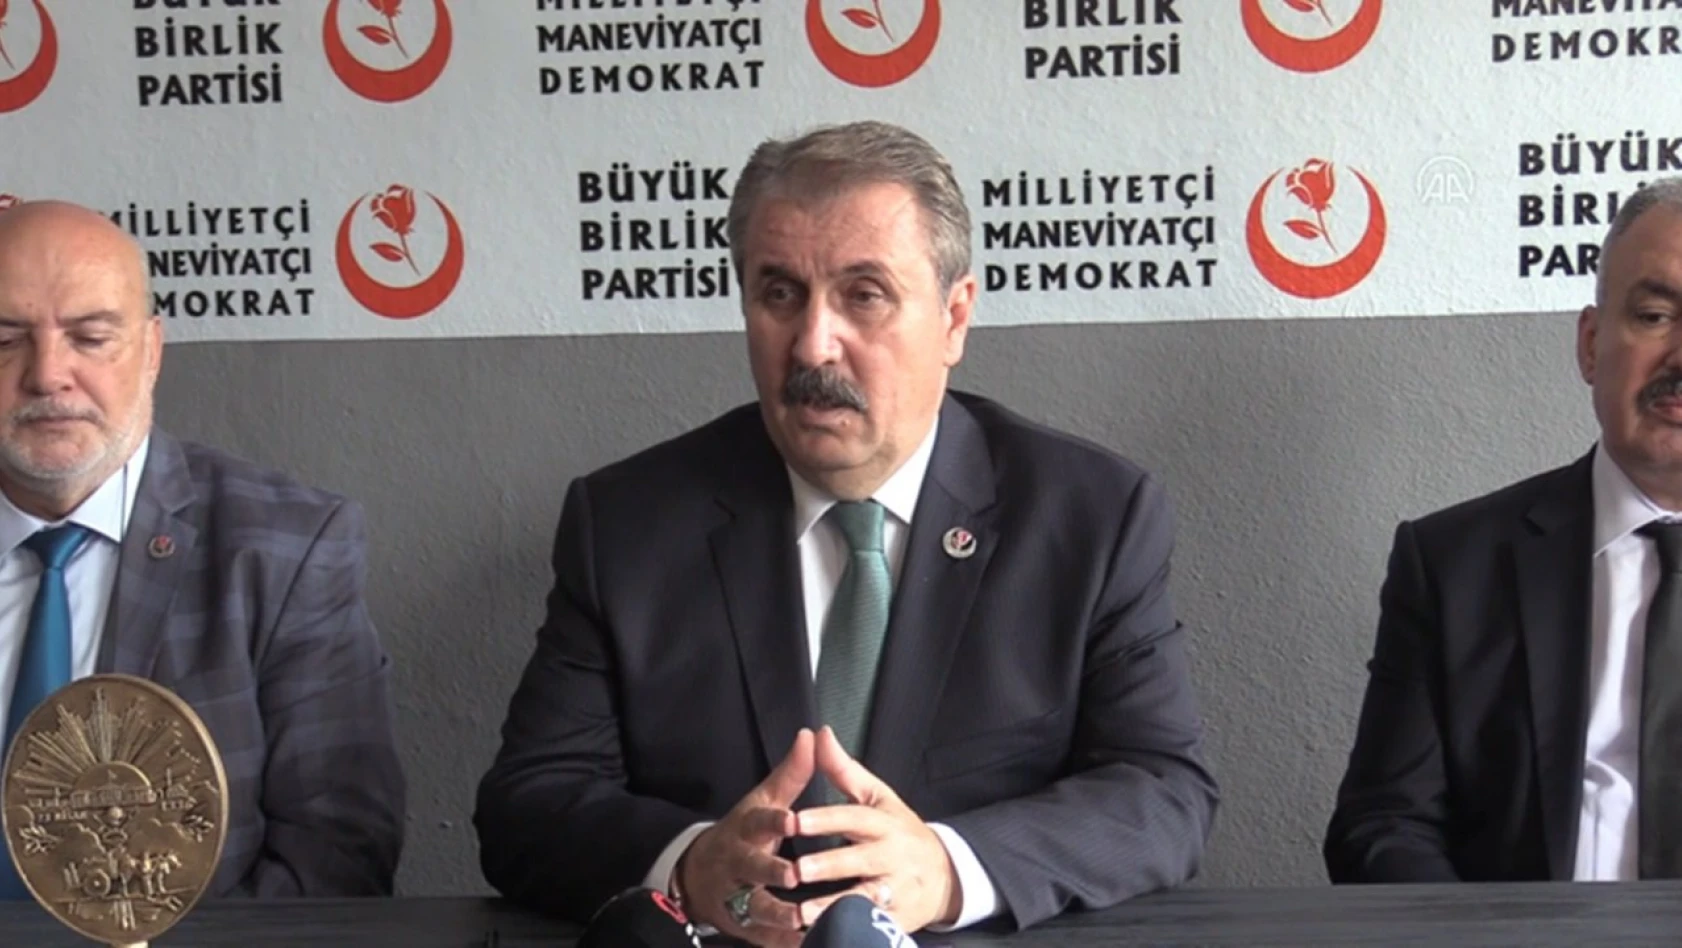 'Türkiye, bu terörist partisinden kurtarılmalıdır'